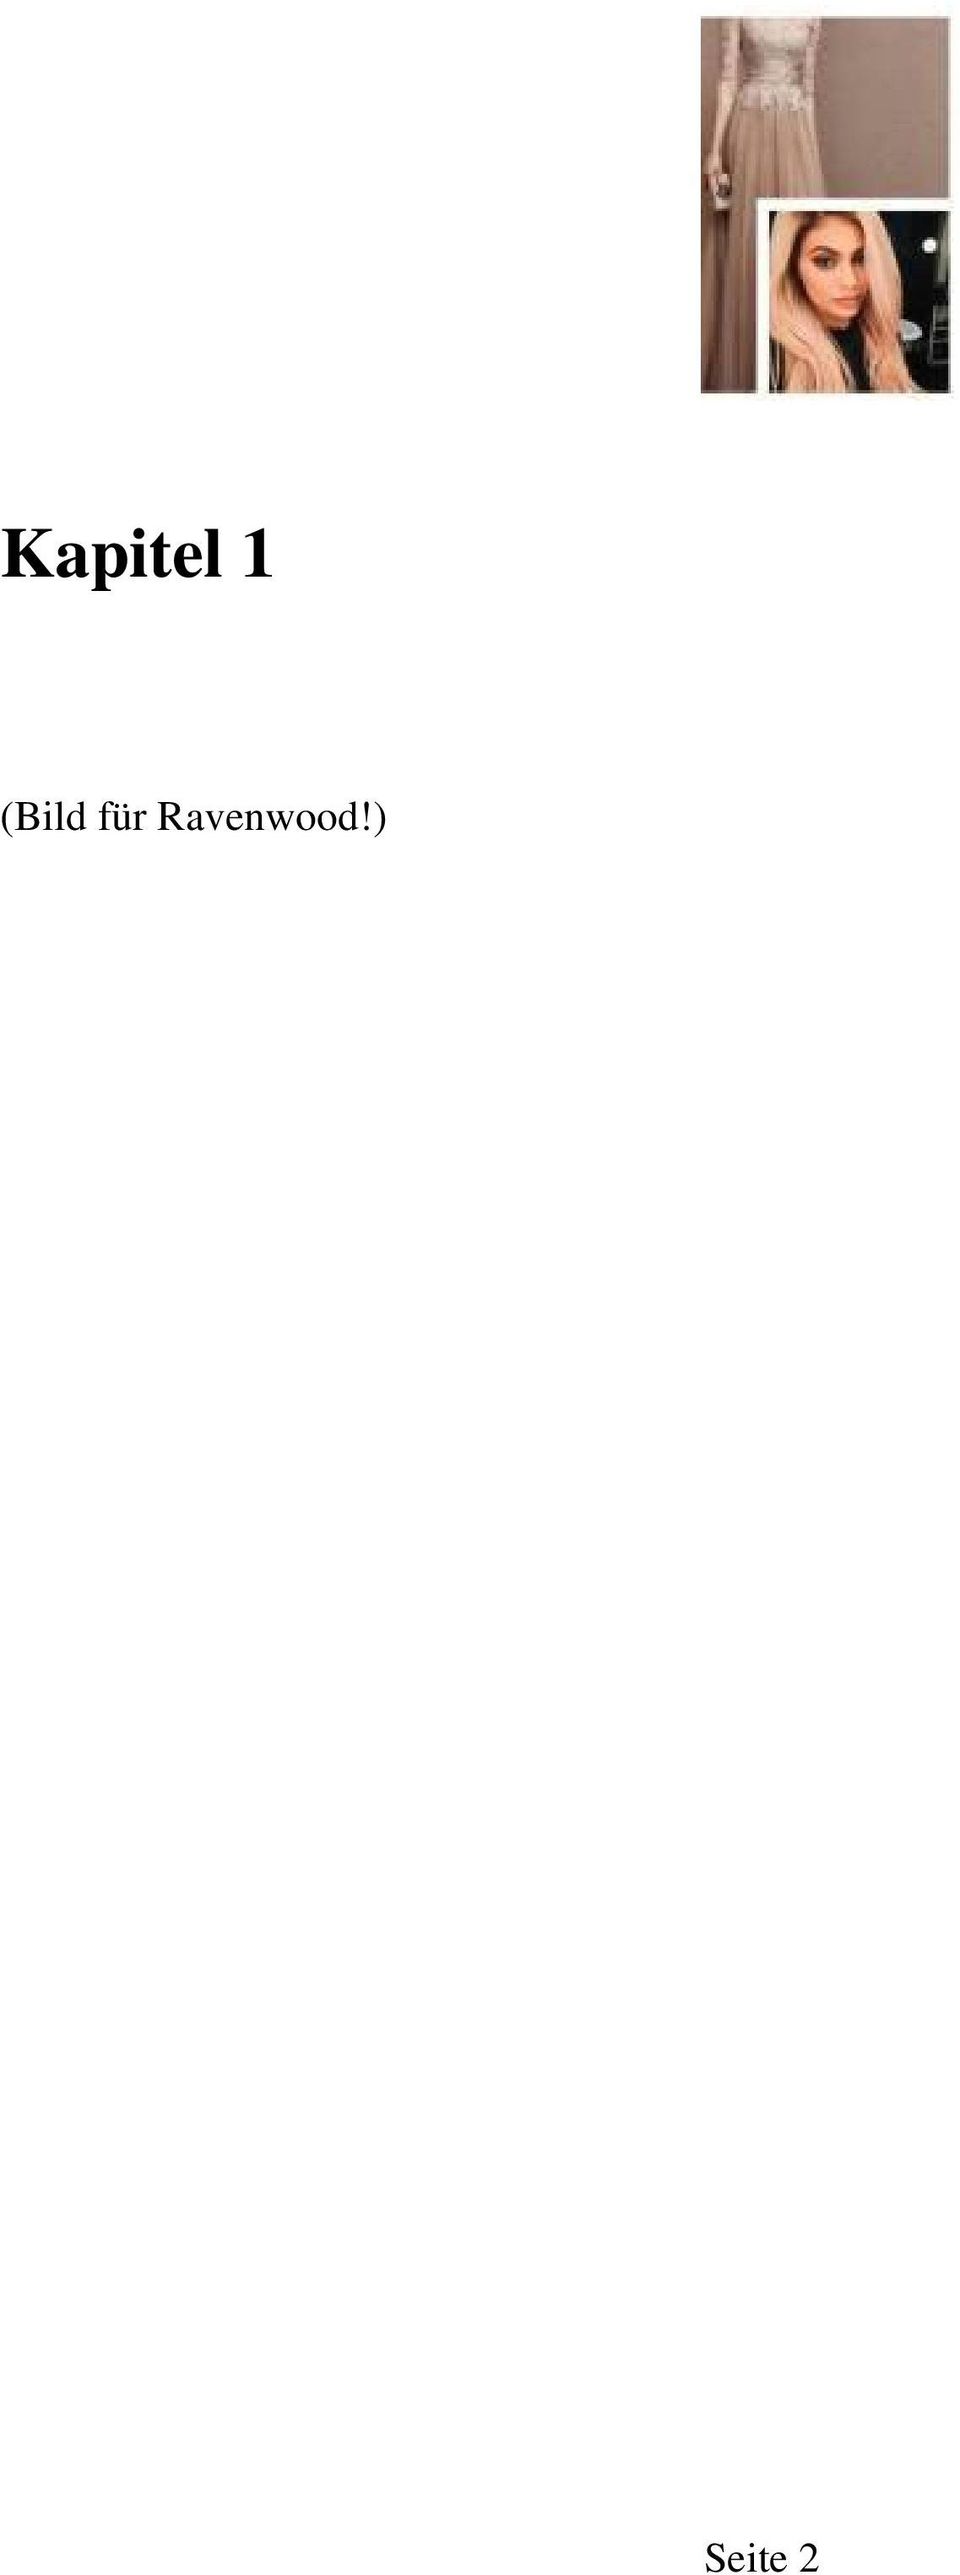 Ravenwood!